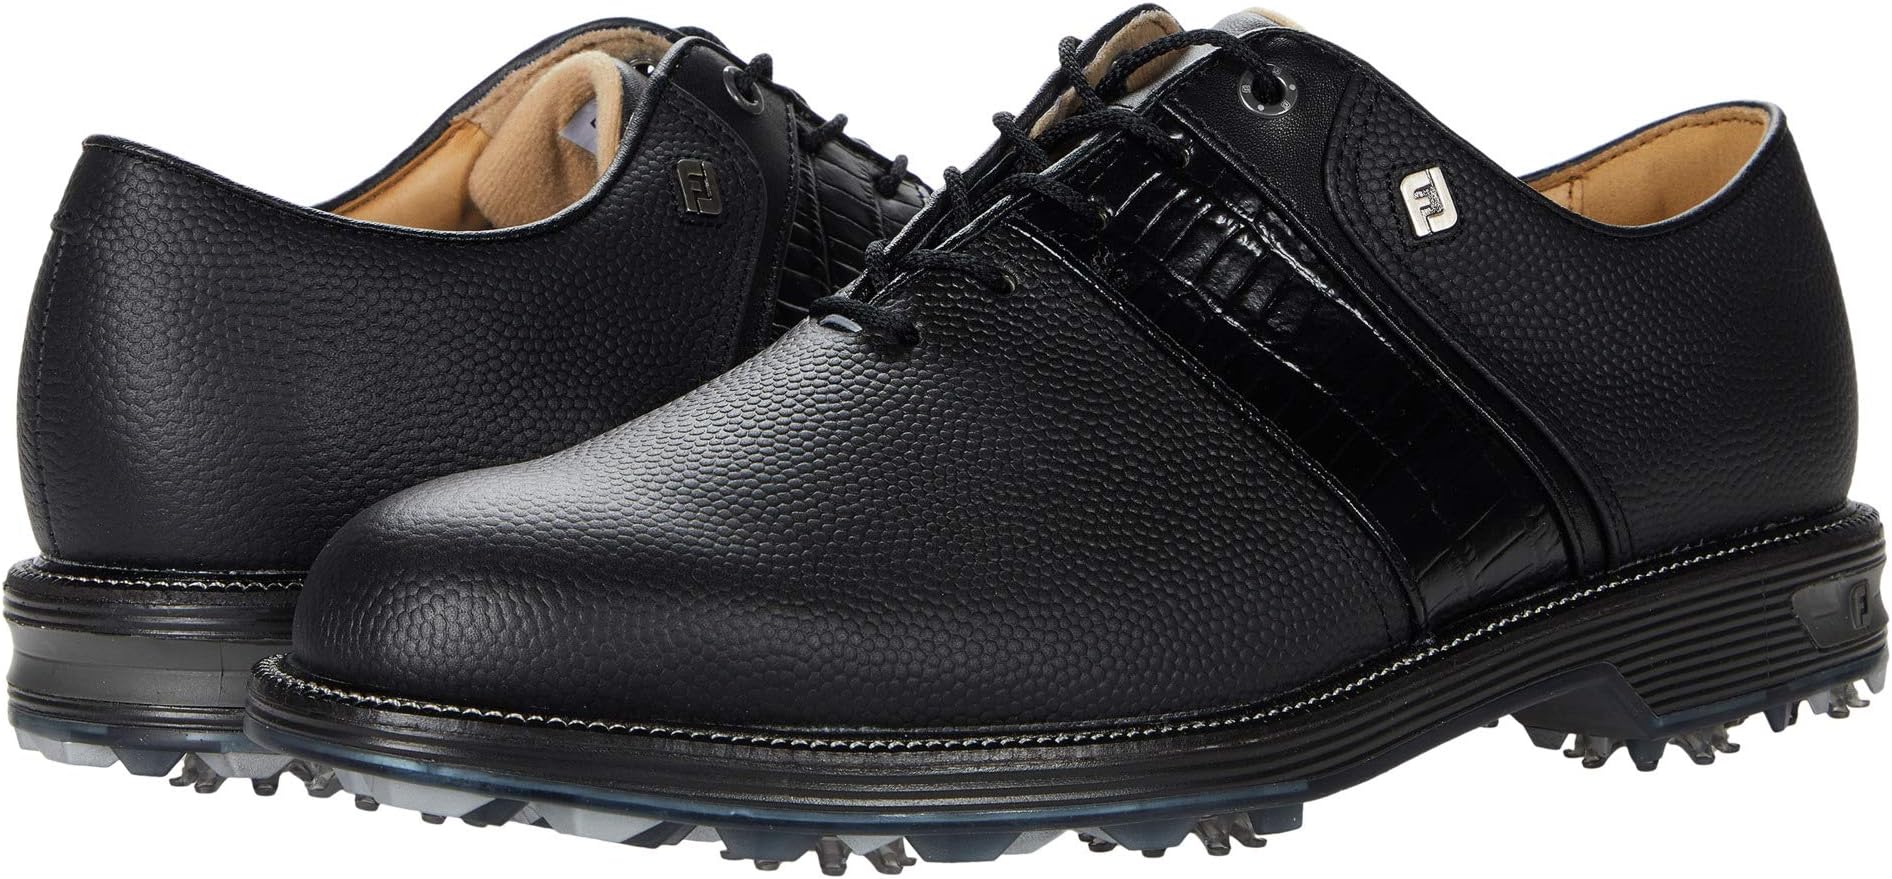 Кроссовки Premiere Series - Packard Golf Shoes FootJoy, черный